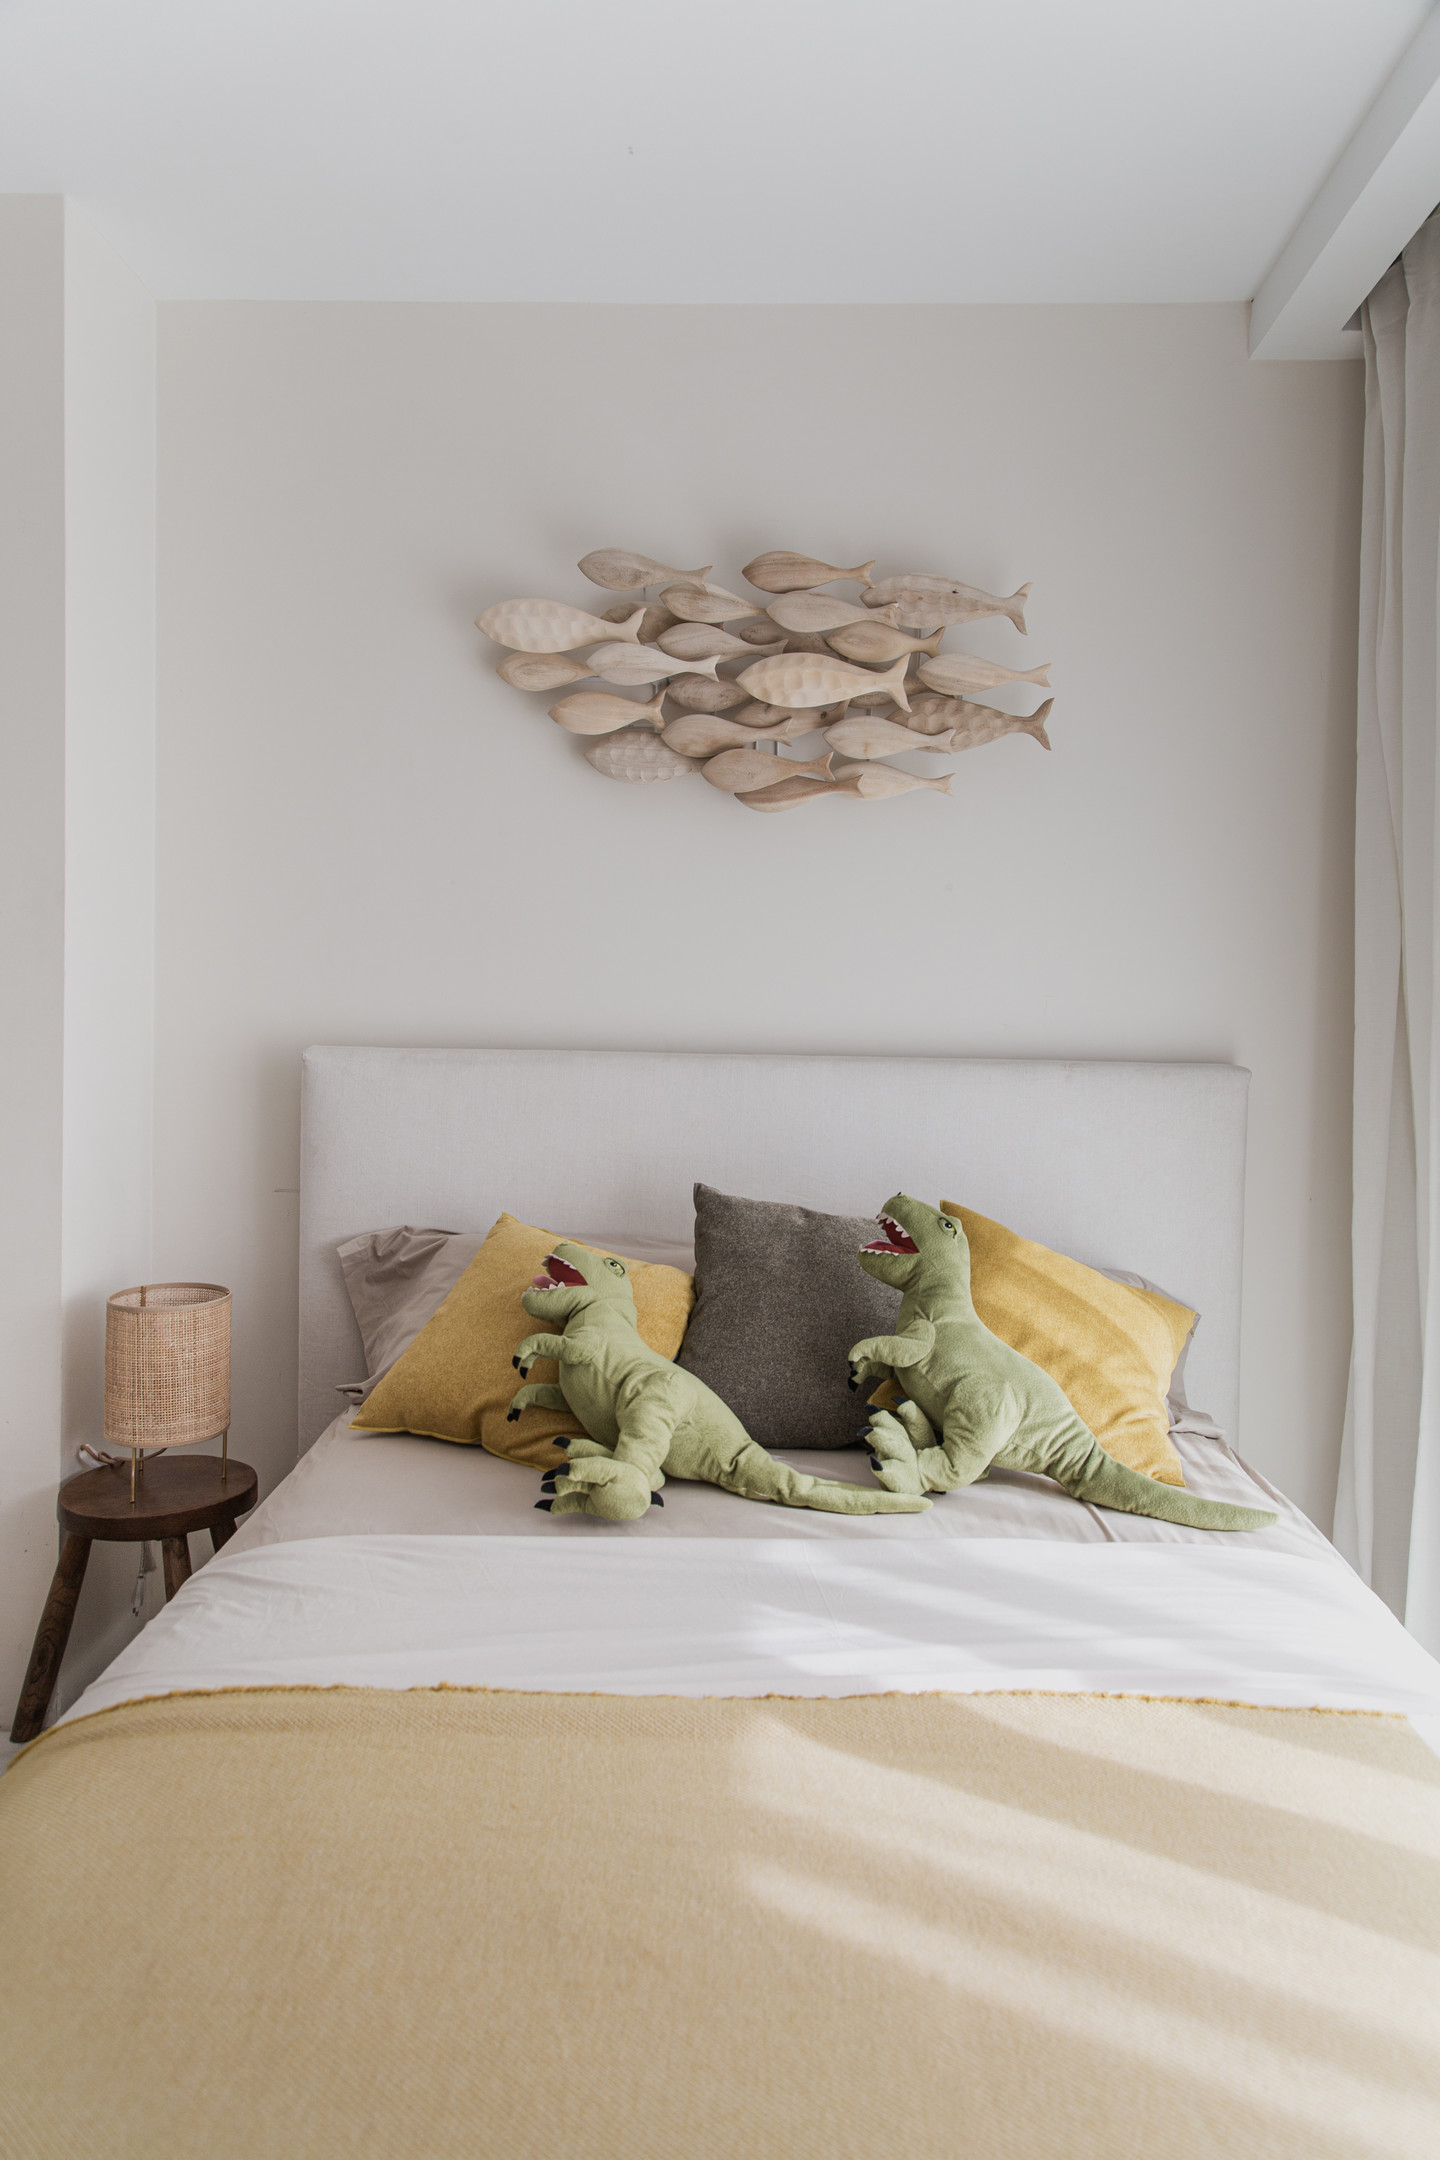 Đầu giường trang trí một đàn cá gỗ trông rất sinh động. Trên giường còn có cả 2 chú thú bông hình khủng long màu xanh đáng yêu. Chiếc đèn ngủ bằng mây tre đan cũng đi theo phong cách sử dụng vật liệu tự nhiên khi lựa chọn nội thất.